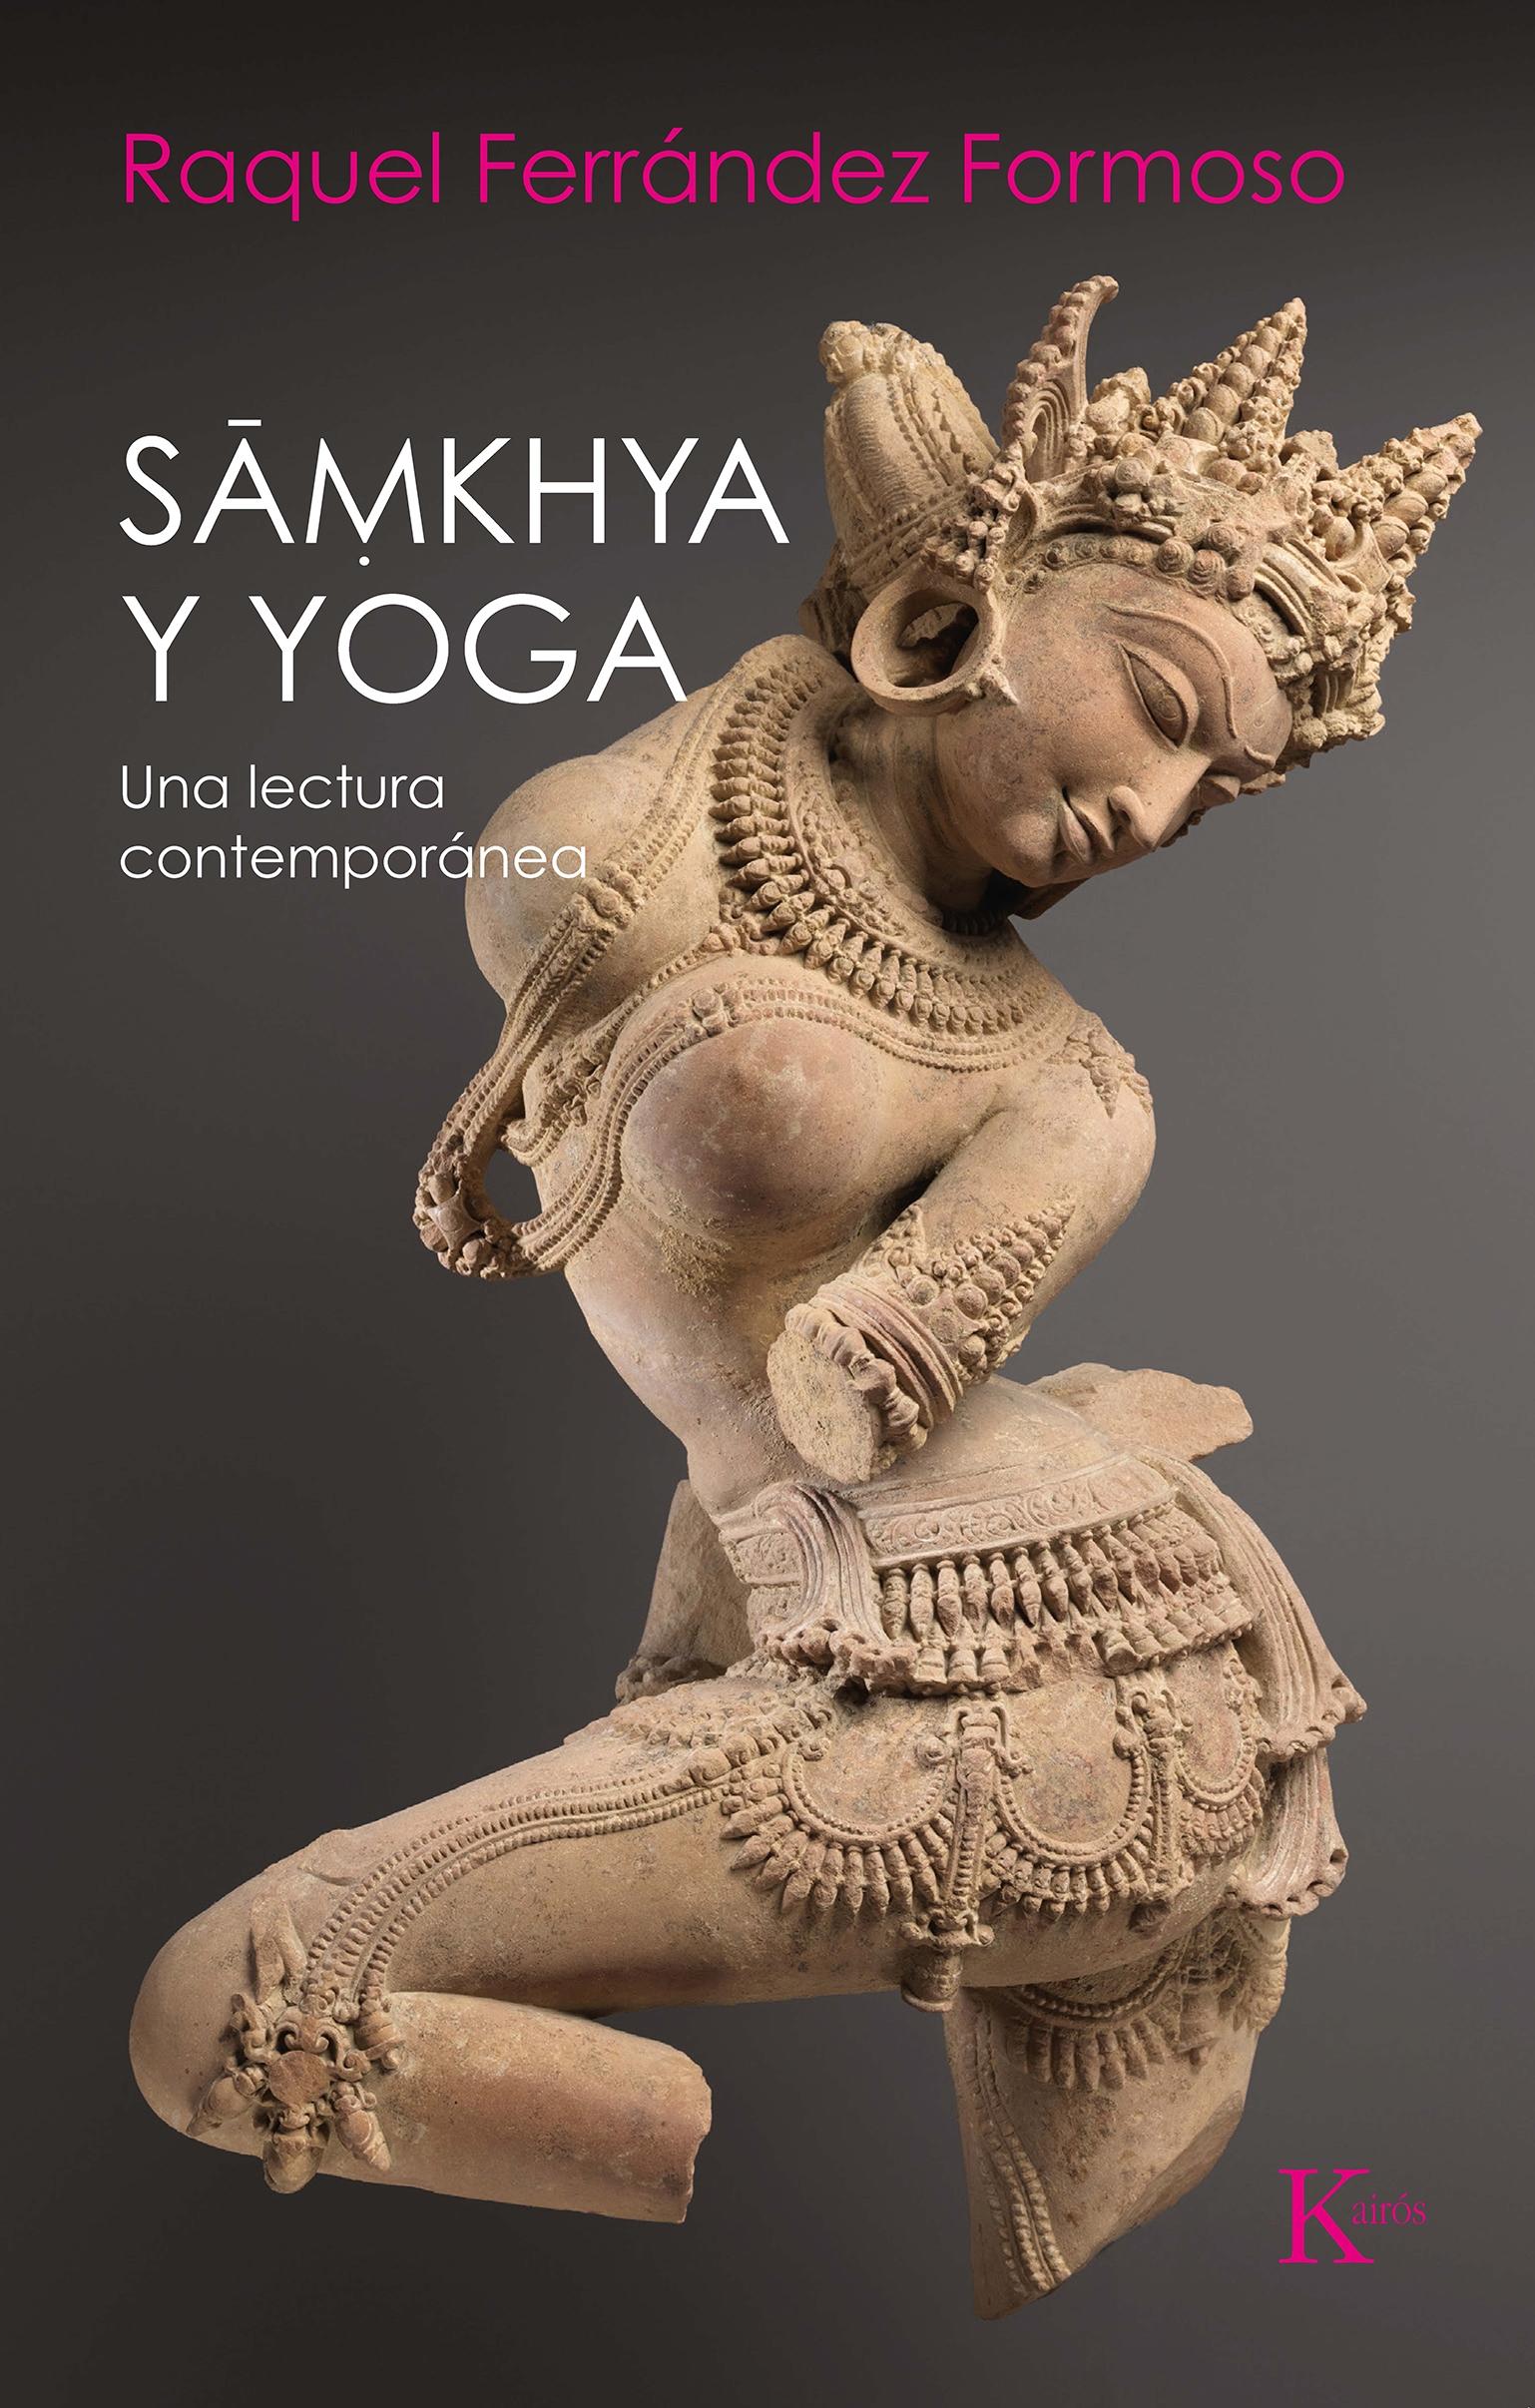 Samkhya y Yoga "Una Lectura Contemporanea". 